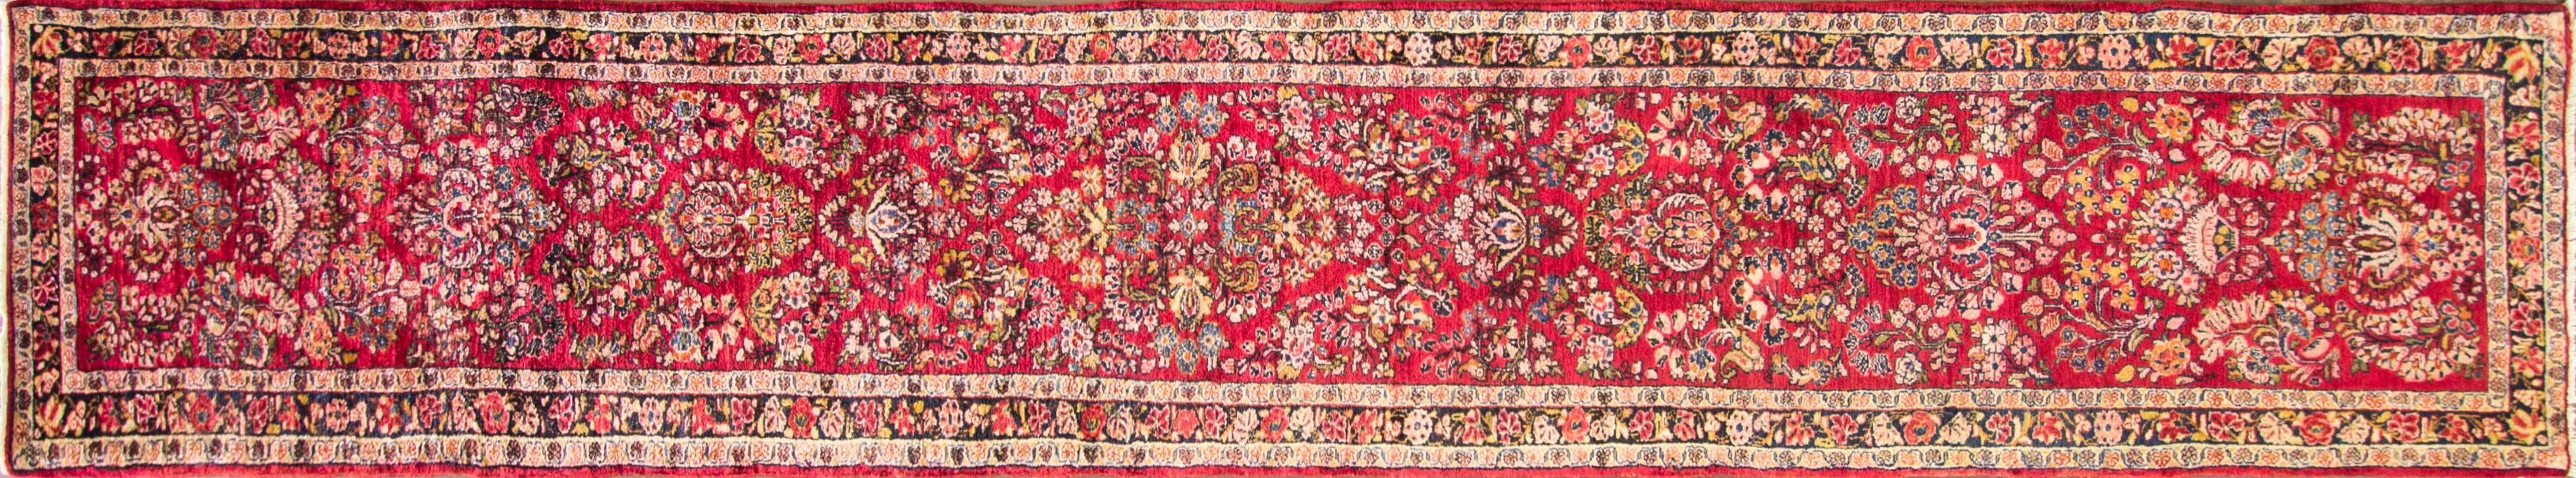 Sarouks, auch Sarouks genannt, sind doppelt geknüpfte, schwerere Teppiche mit einer höheren Knotenzahl als Teppiche aus dem Dorf Sultanabad. Die Felder sind oft blau oder elfenbeinfarben, und die Motive sind in der Regel entweder große Medaillons